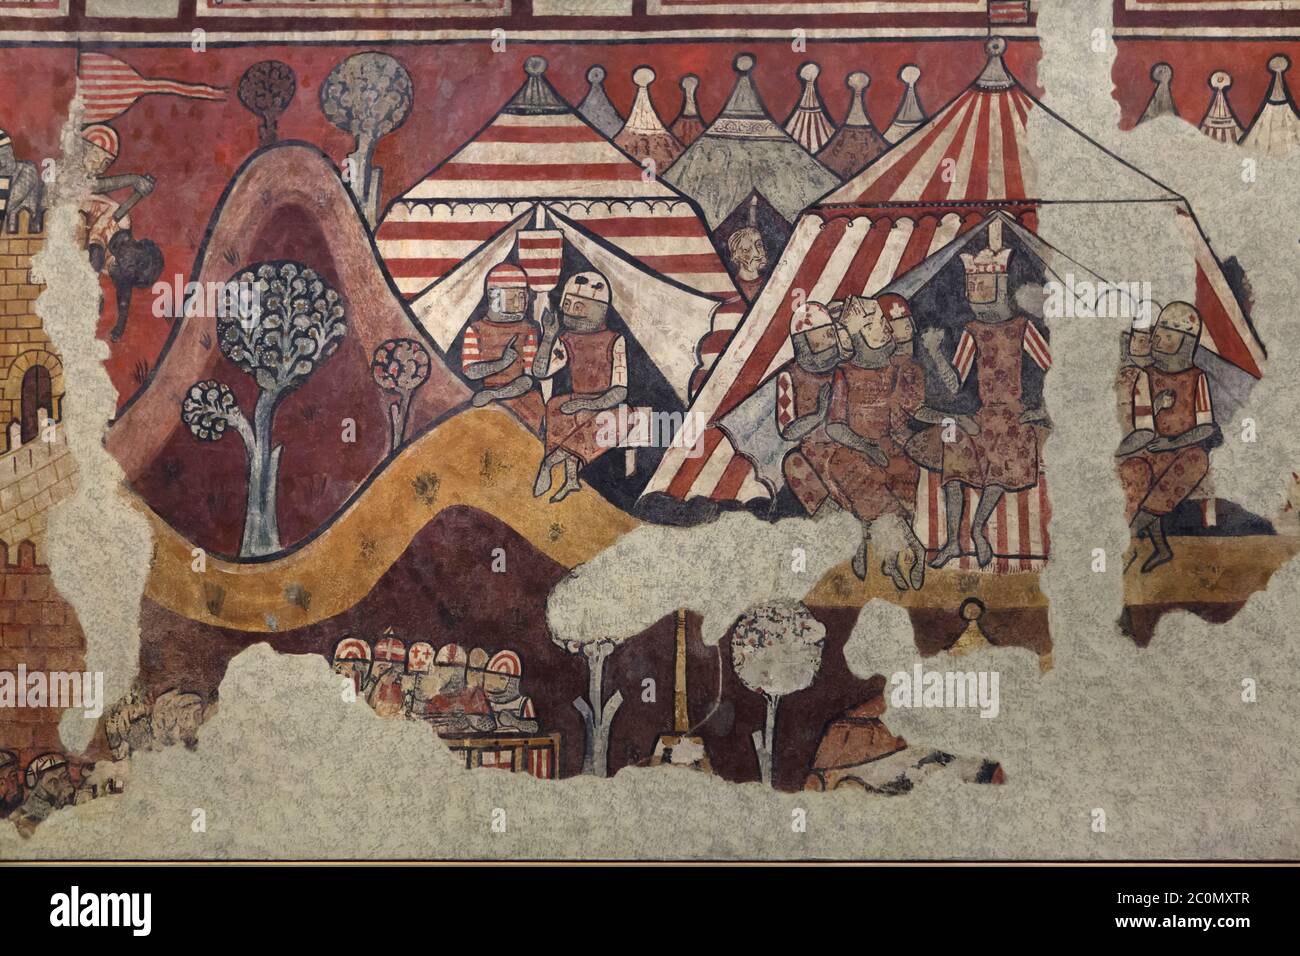 Eroberung Mallorcas in den gotischen Wandmalereien von 1285-1290 dargestellt, jetzt auf dem Display im National Art Museum von Katalonien (Museu Nacional d'Art de Catalunya) in Barcelona, Katalonien, Spanien. König Jakob I. der Eroberer im Lager Aragonas beim Angriff auf Medina Mayurqa (Palma de Mallorca) am 31. Dezember 1229 rechts dargestellt. Im Zelt in der Mitte sind Graf Hug IV. Von Empúries und Fürst Pero Maça von Sangarrén dargestellt. Die Wandmalereien eines anonymen katalanischen Malers, bekannt als Meister der Eroberung Mallorcas (Maestro de la conquista de Mallorca), wurden übertragen Stockfoto